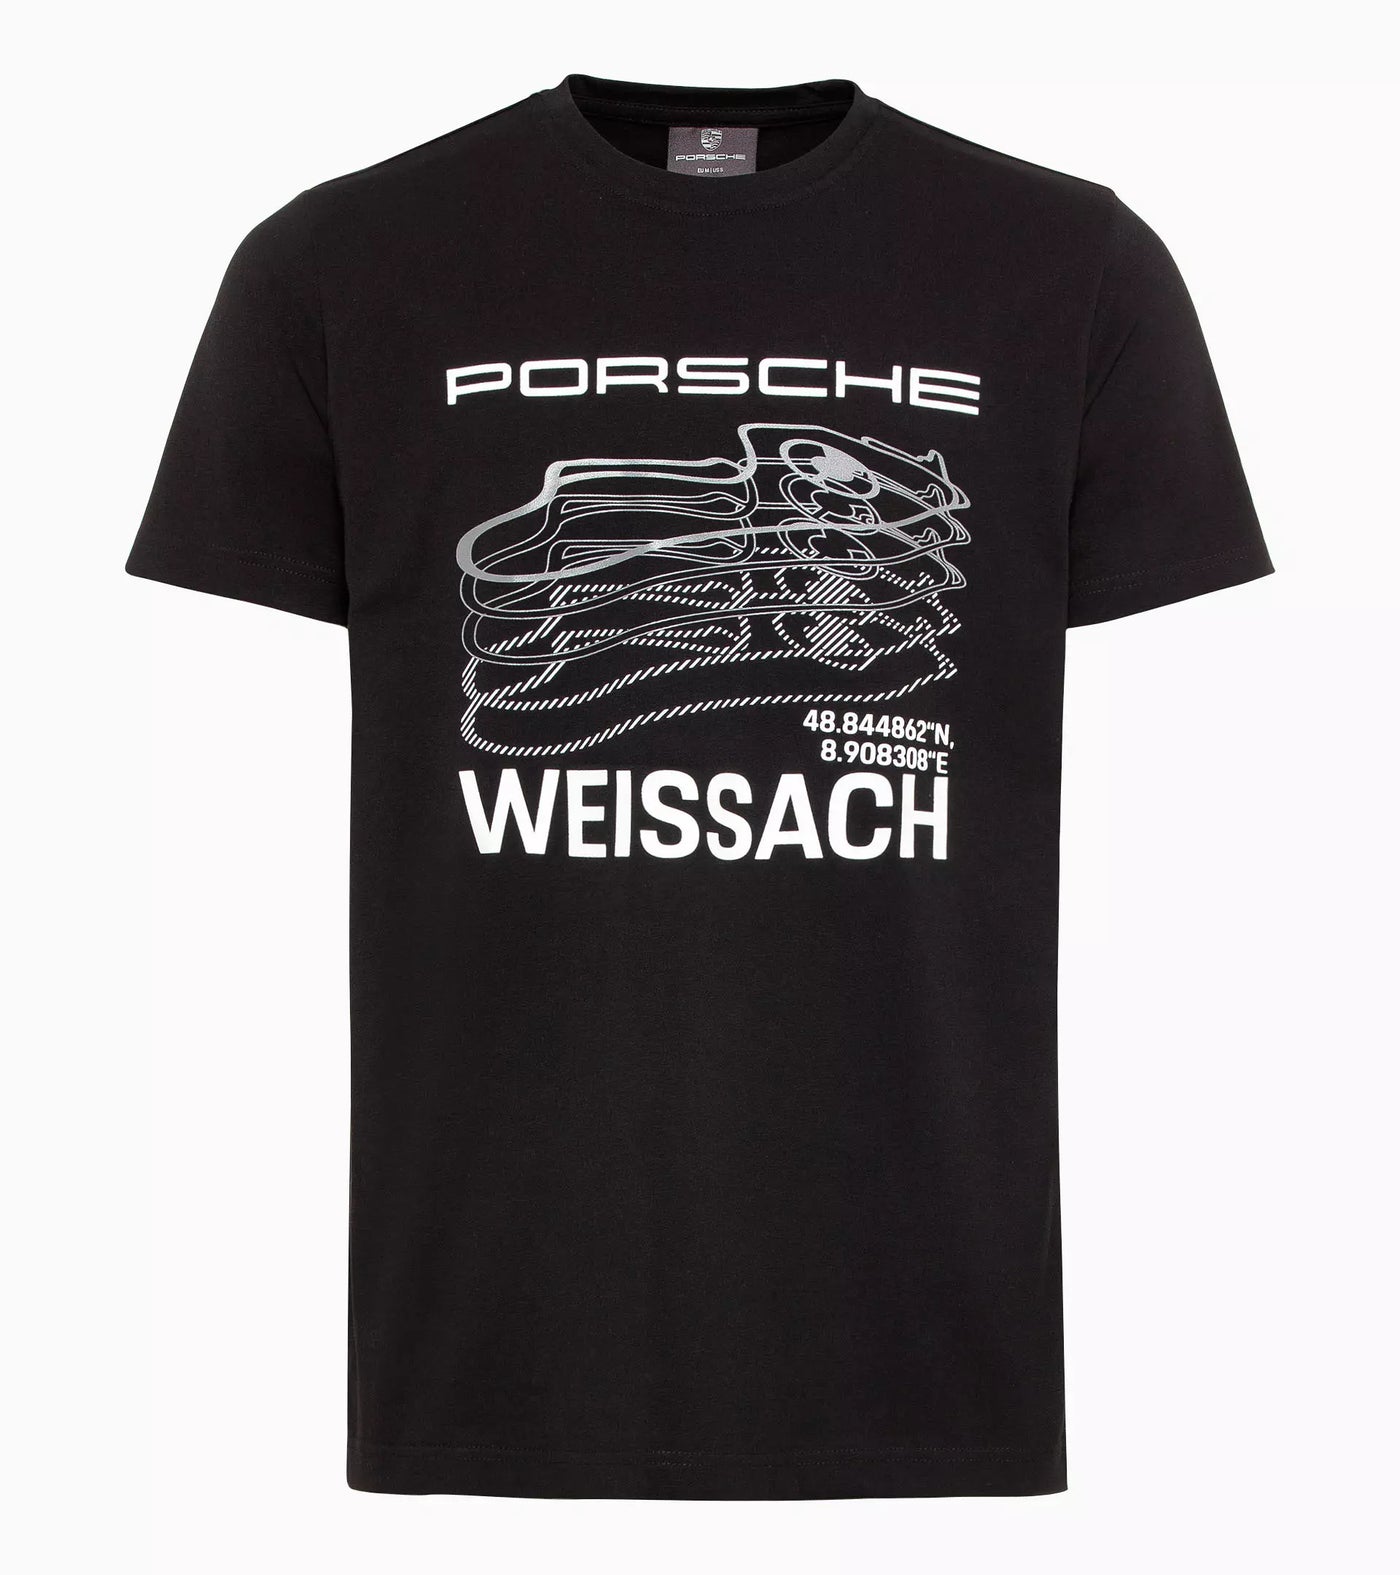 Porsche Men's T-shirt (Black) - Weissach